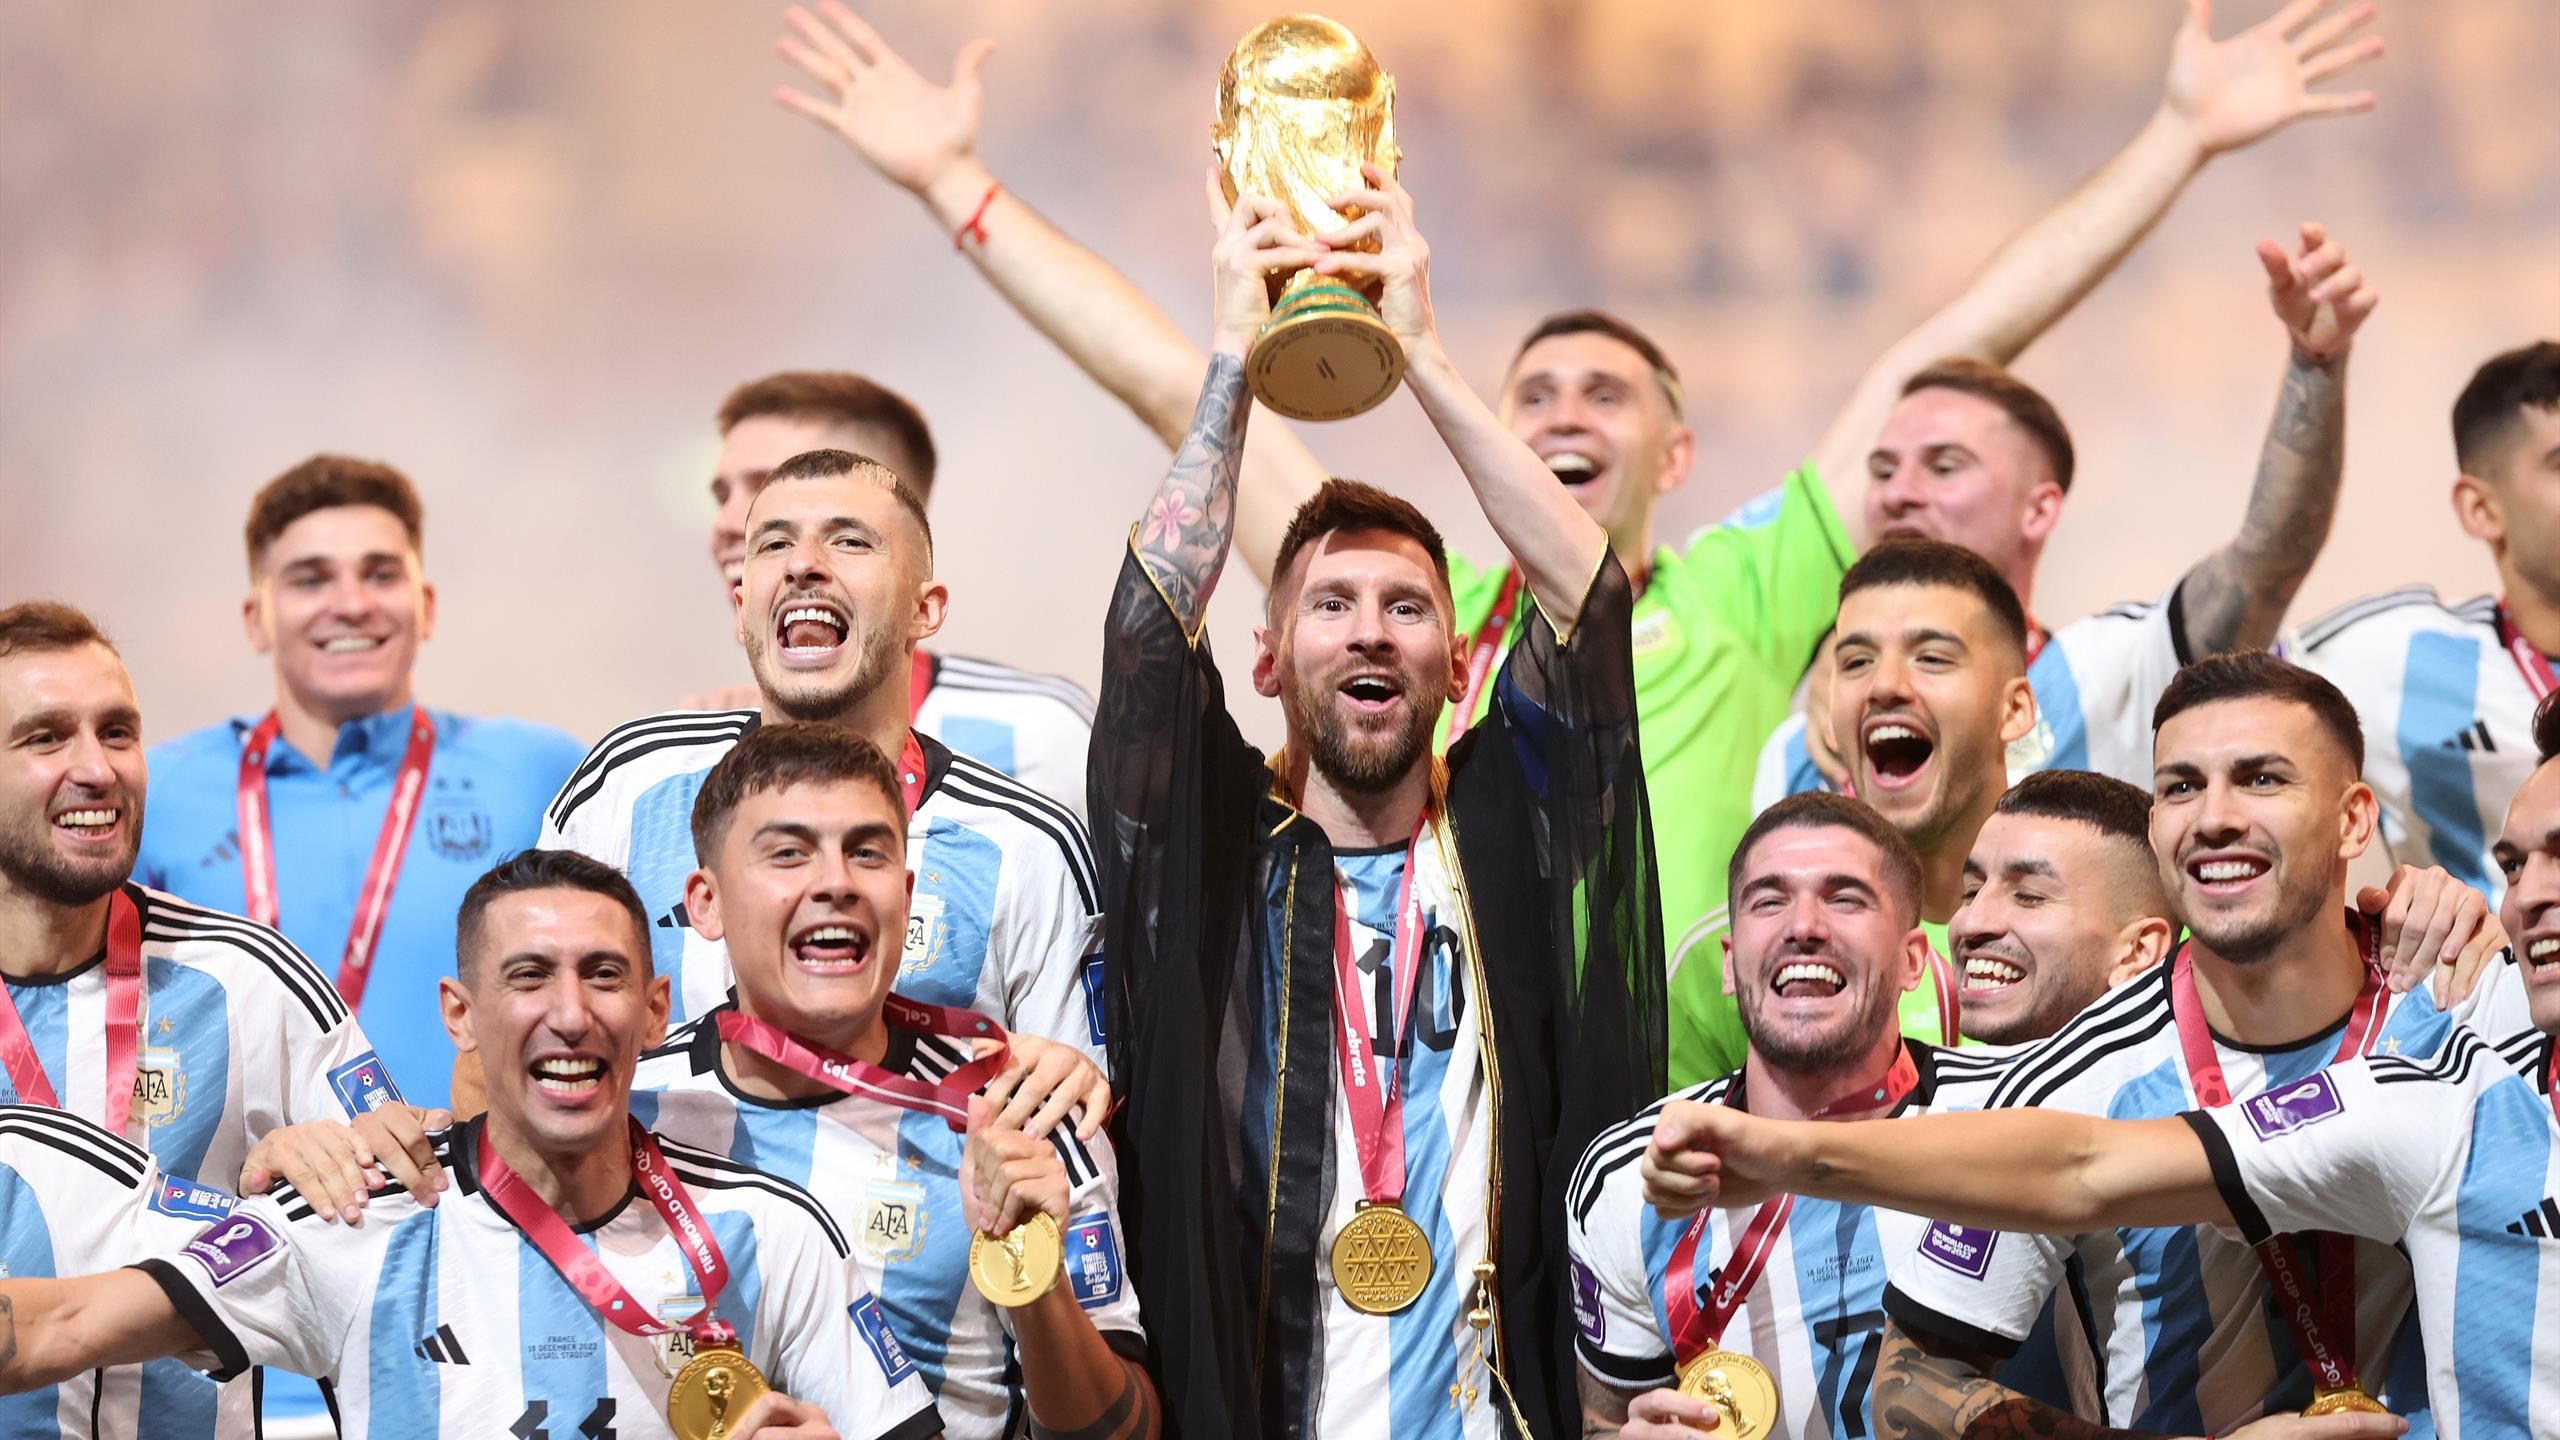 World Cup 2022: Hãy để chúng tôi chỉ cho bạn sự kiện thể thao tuyệt vời nhất trong năm 2022 - World Cup. Điều này sẽ làm cho trái tim của bạn nhanh đập và tâm trí của bạn càng hứng thú nhìn vào những hình ảnh của giải bóng đá lớn nhất trên thế giới này.